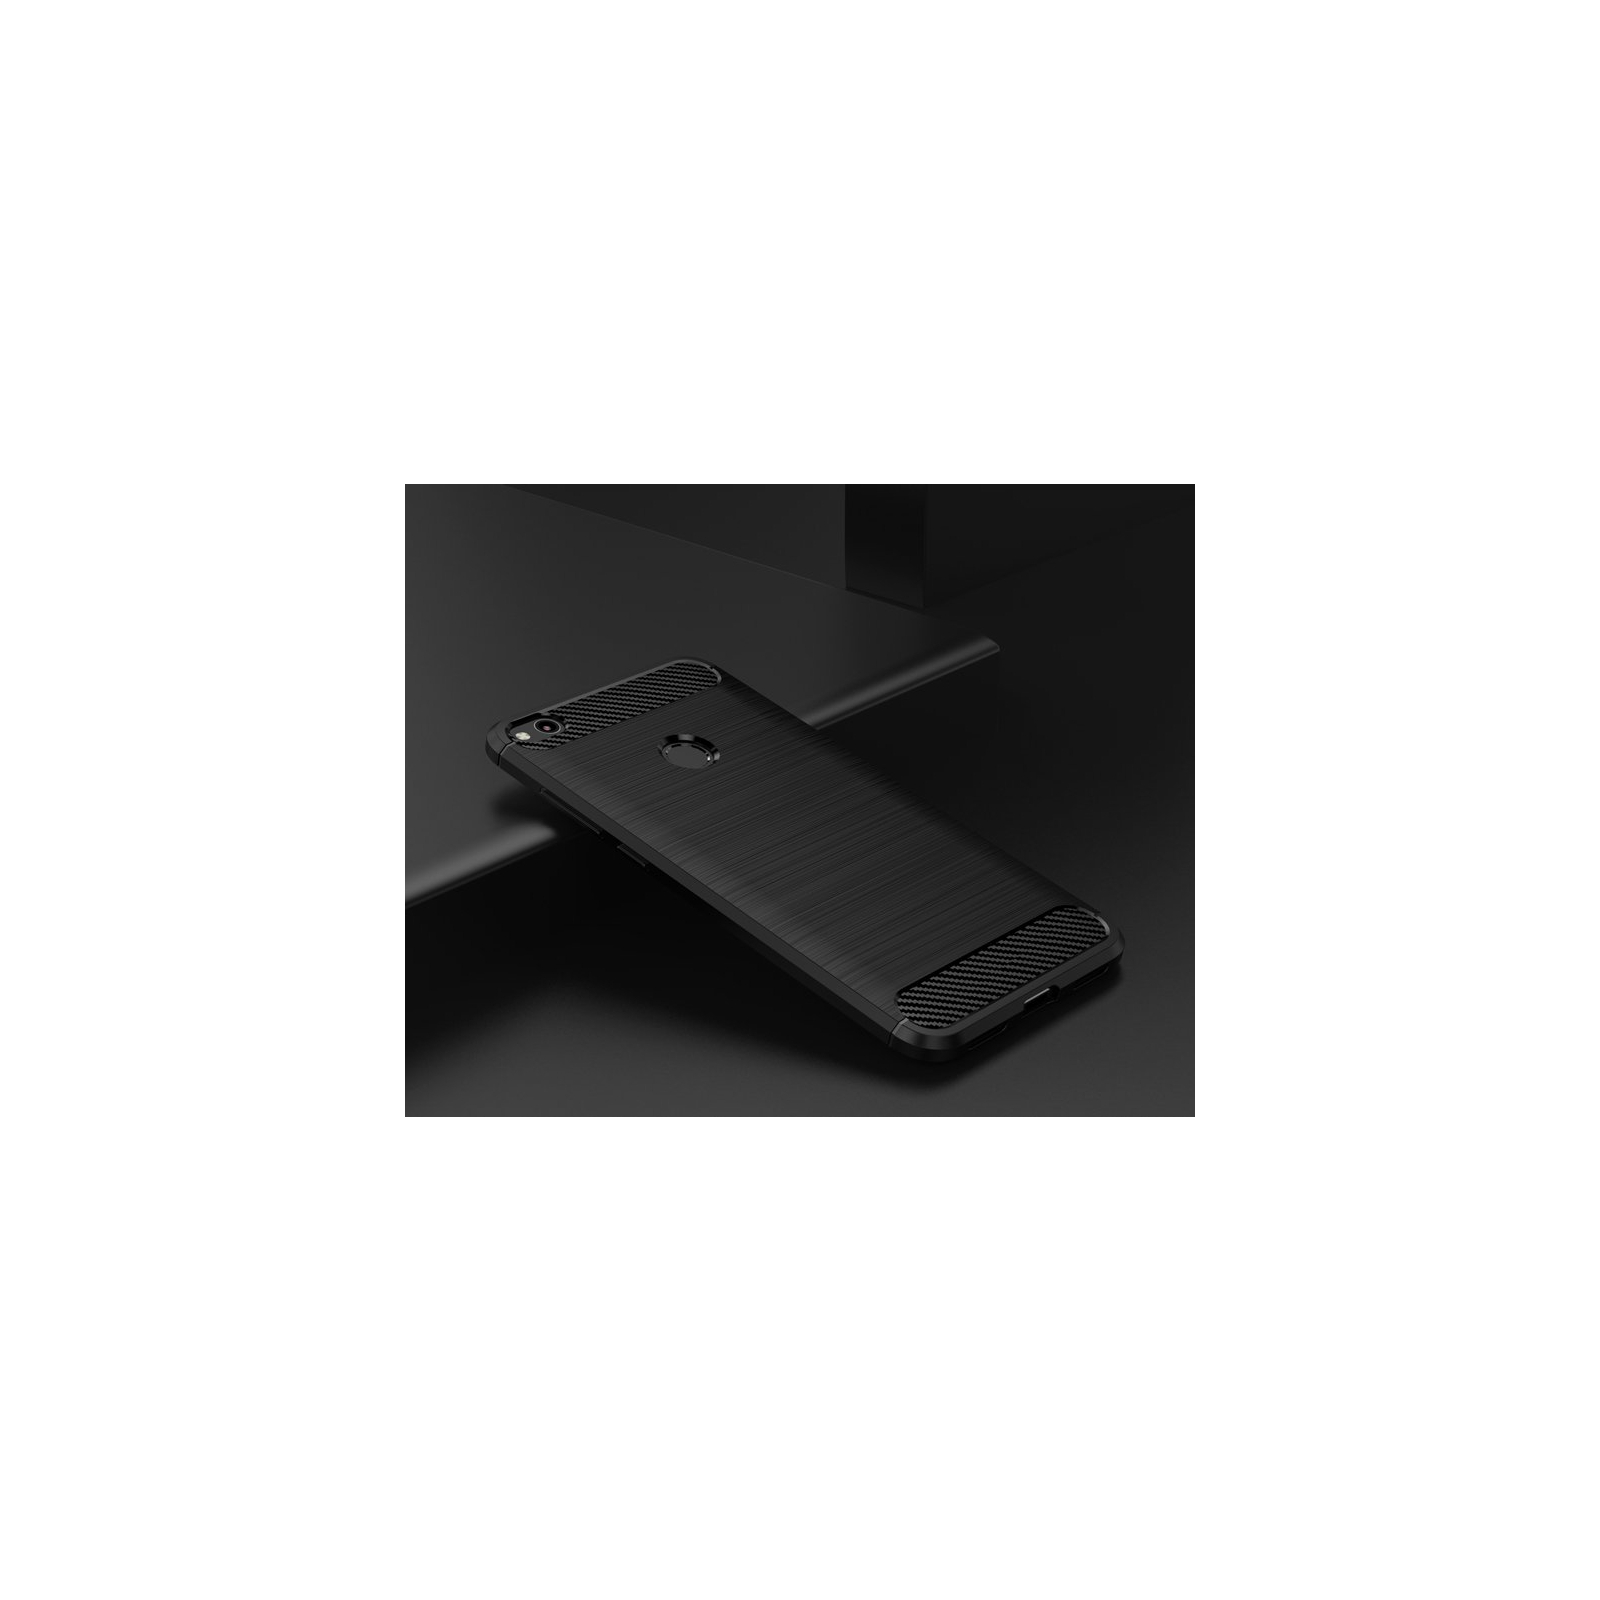 Чехол для мобильного телефона для Huawei P8 Lite 2017 Carbon Fiber (Black) Laudtec (LT-P8L2017B) изображение 6